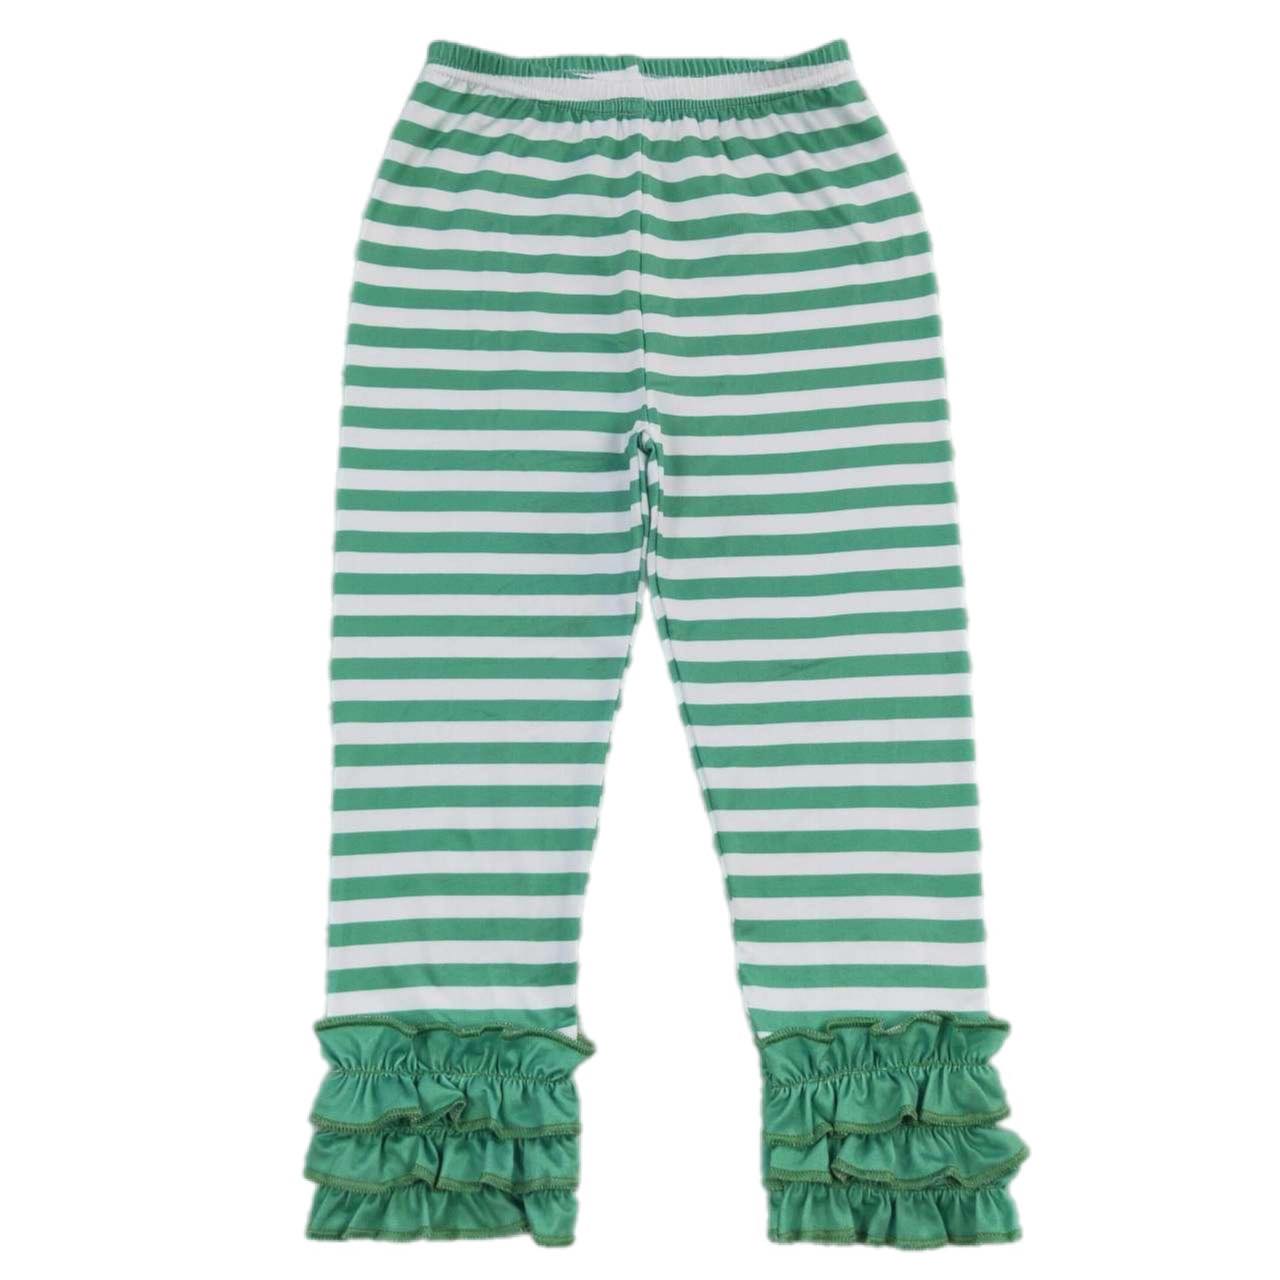 ᴡᴇᴇᴋʟʏ ᴘʀᴇ ᴏʀᴅᴇʀ Ruffle Green Striped Pants